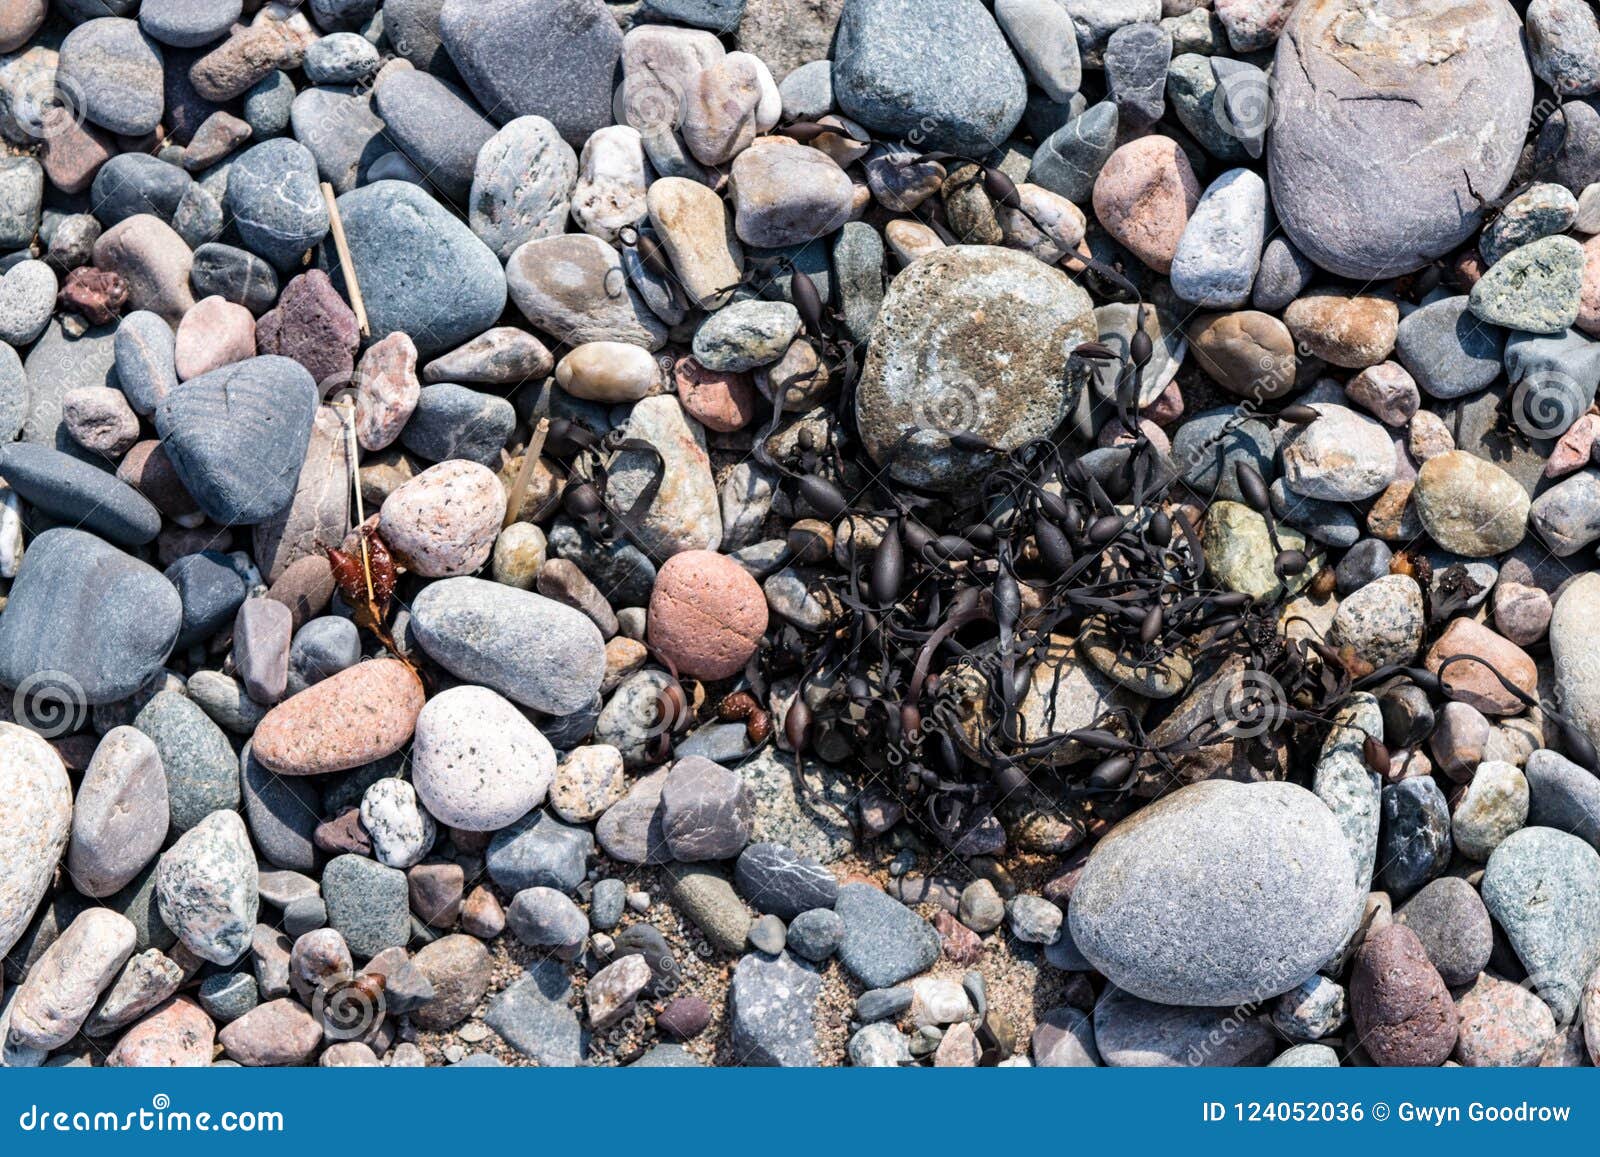 pebbles, stones, rocks and seaweed on beach